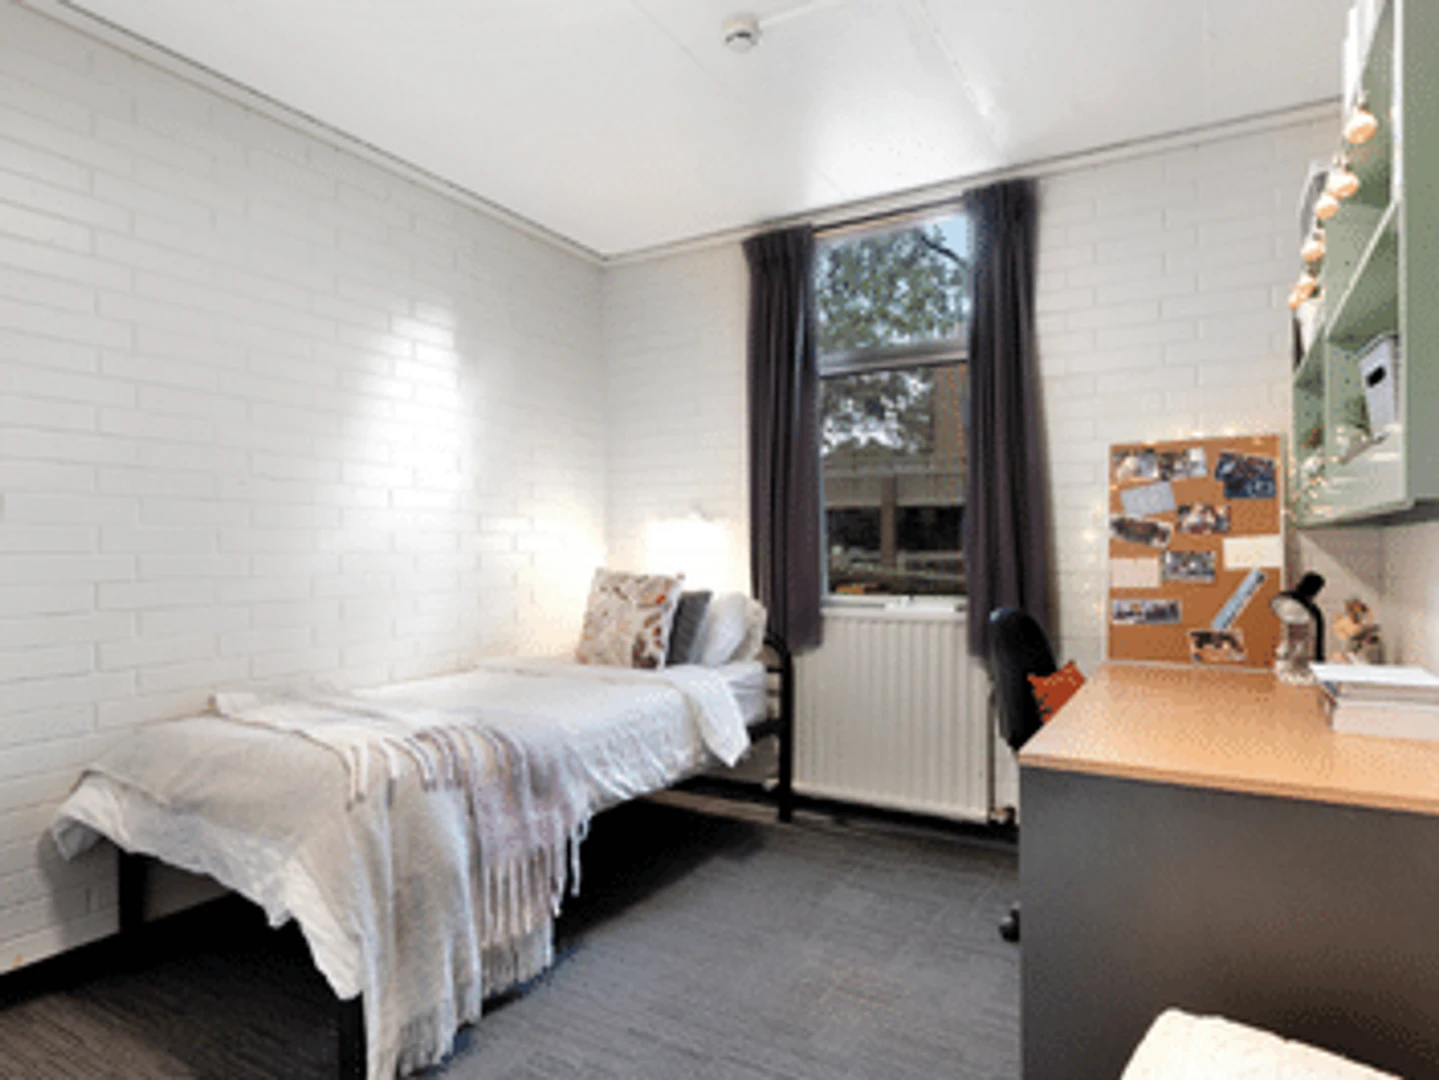 Gemeinsames Zimmer mit einem anderen Studierenden in Melbourne